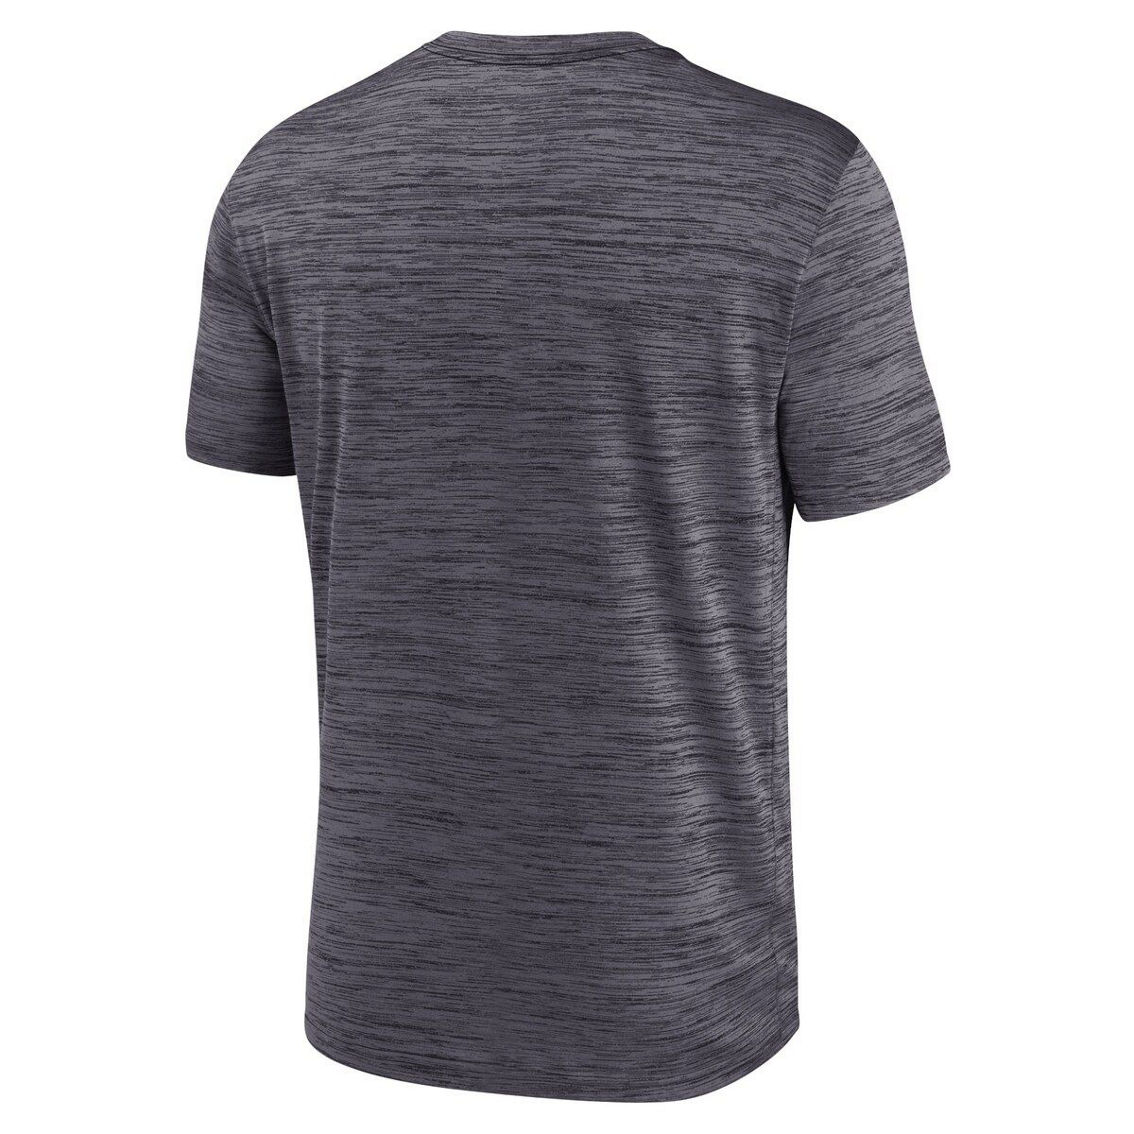 Nike Men's Anthracite Yardline Velocity Performance T-Shirt - Image 4 of 4